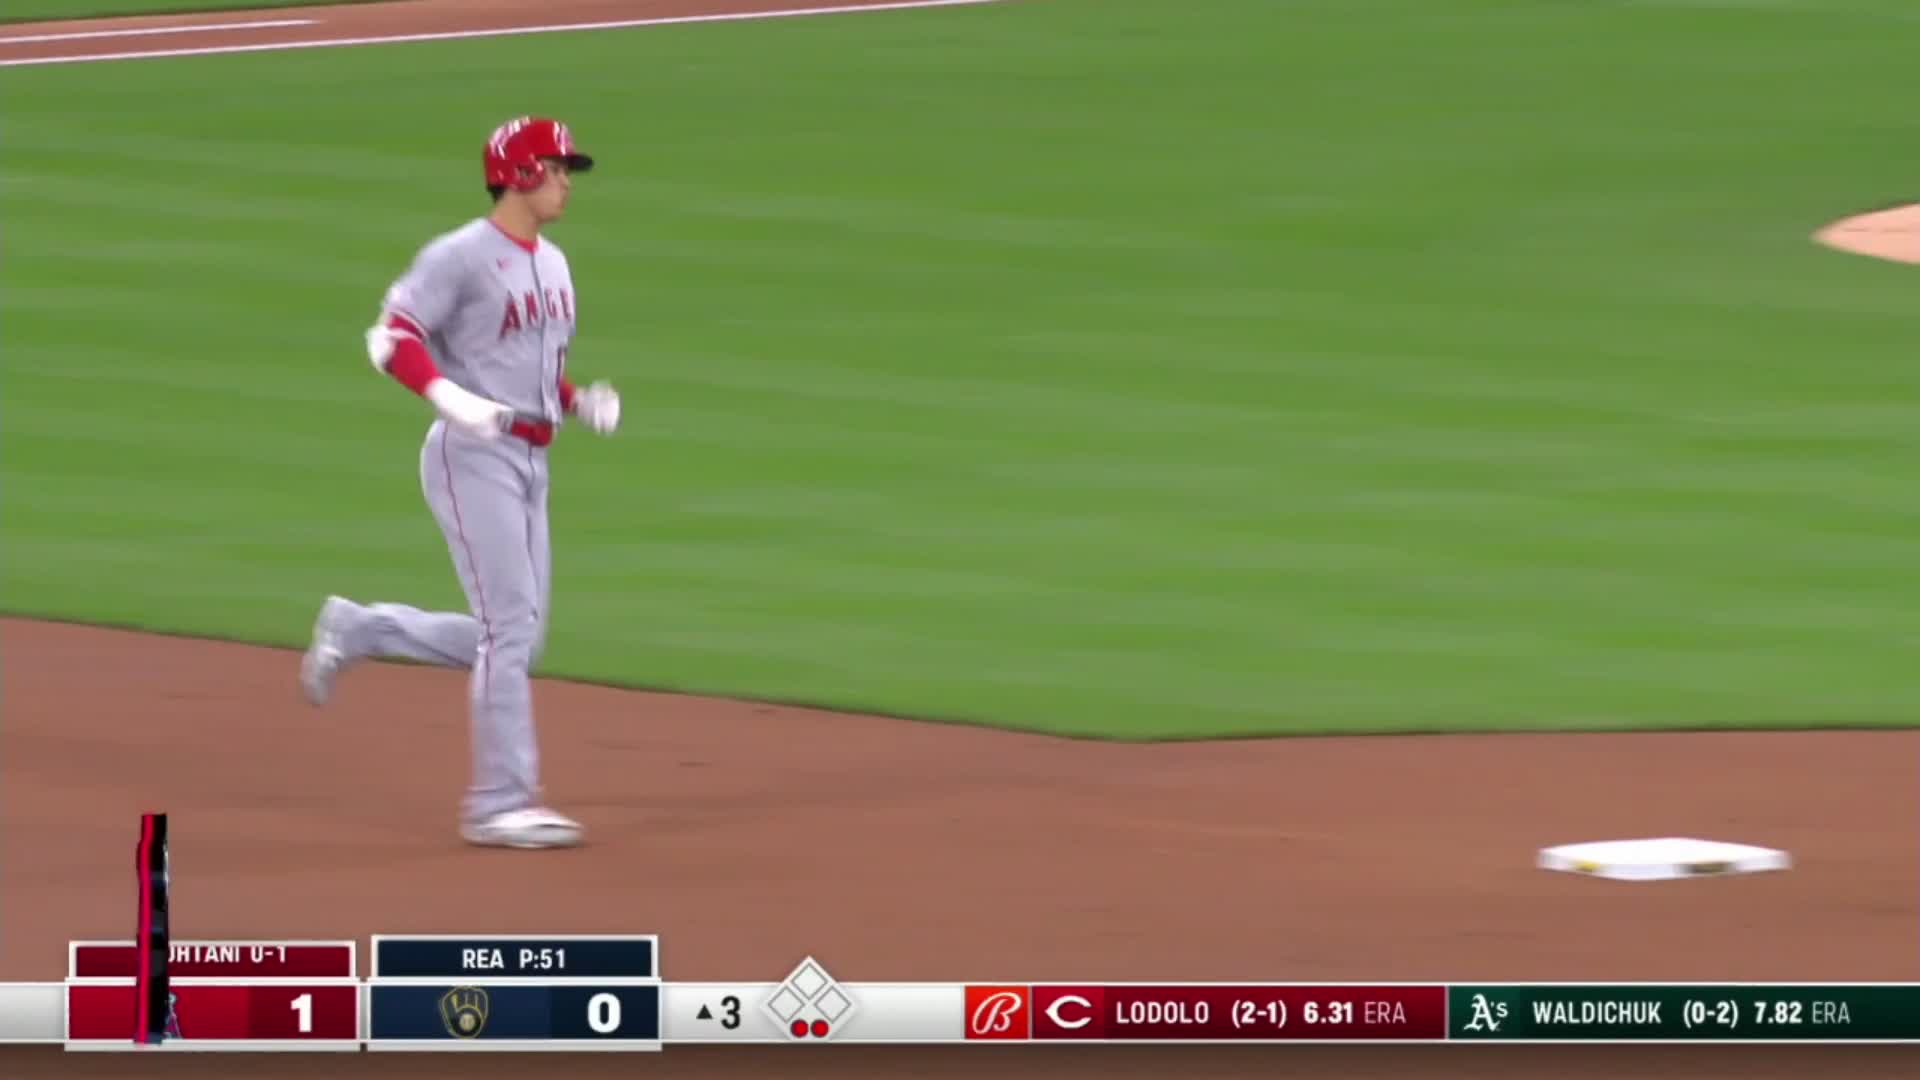 Jake Burger gets tired of hitting home runs and hits his third